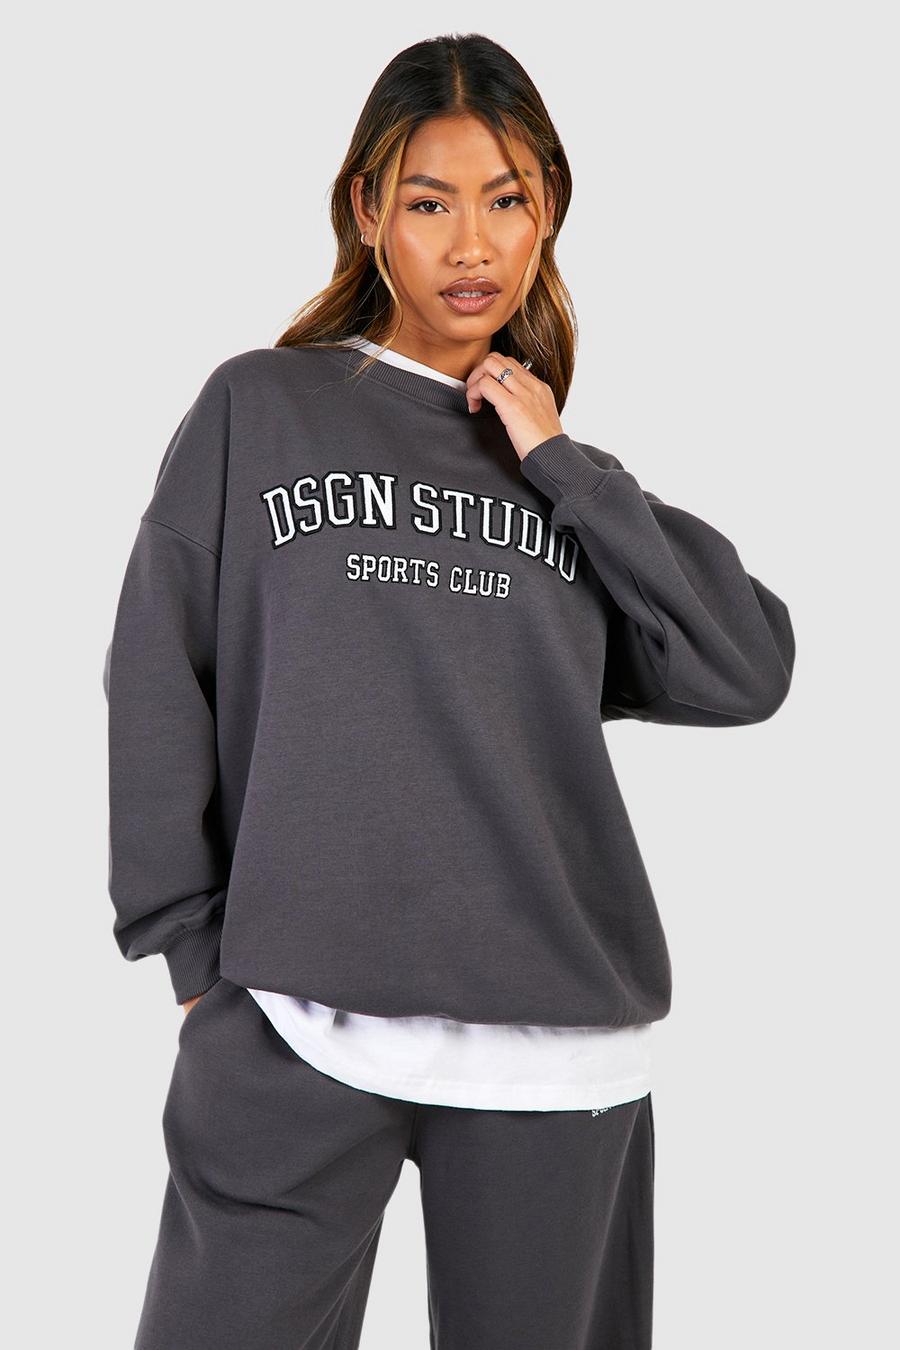 Charcoal Dsgn Studio Applique Oversized Sweatshirt  image number 1